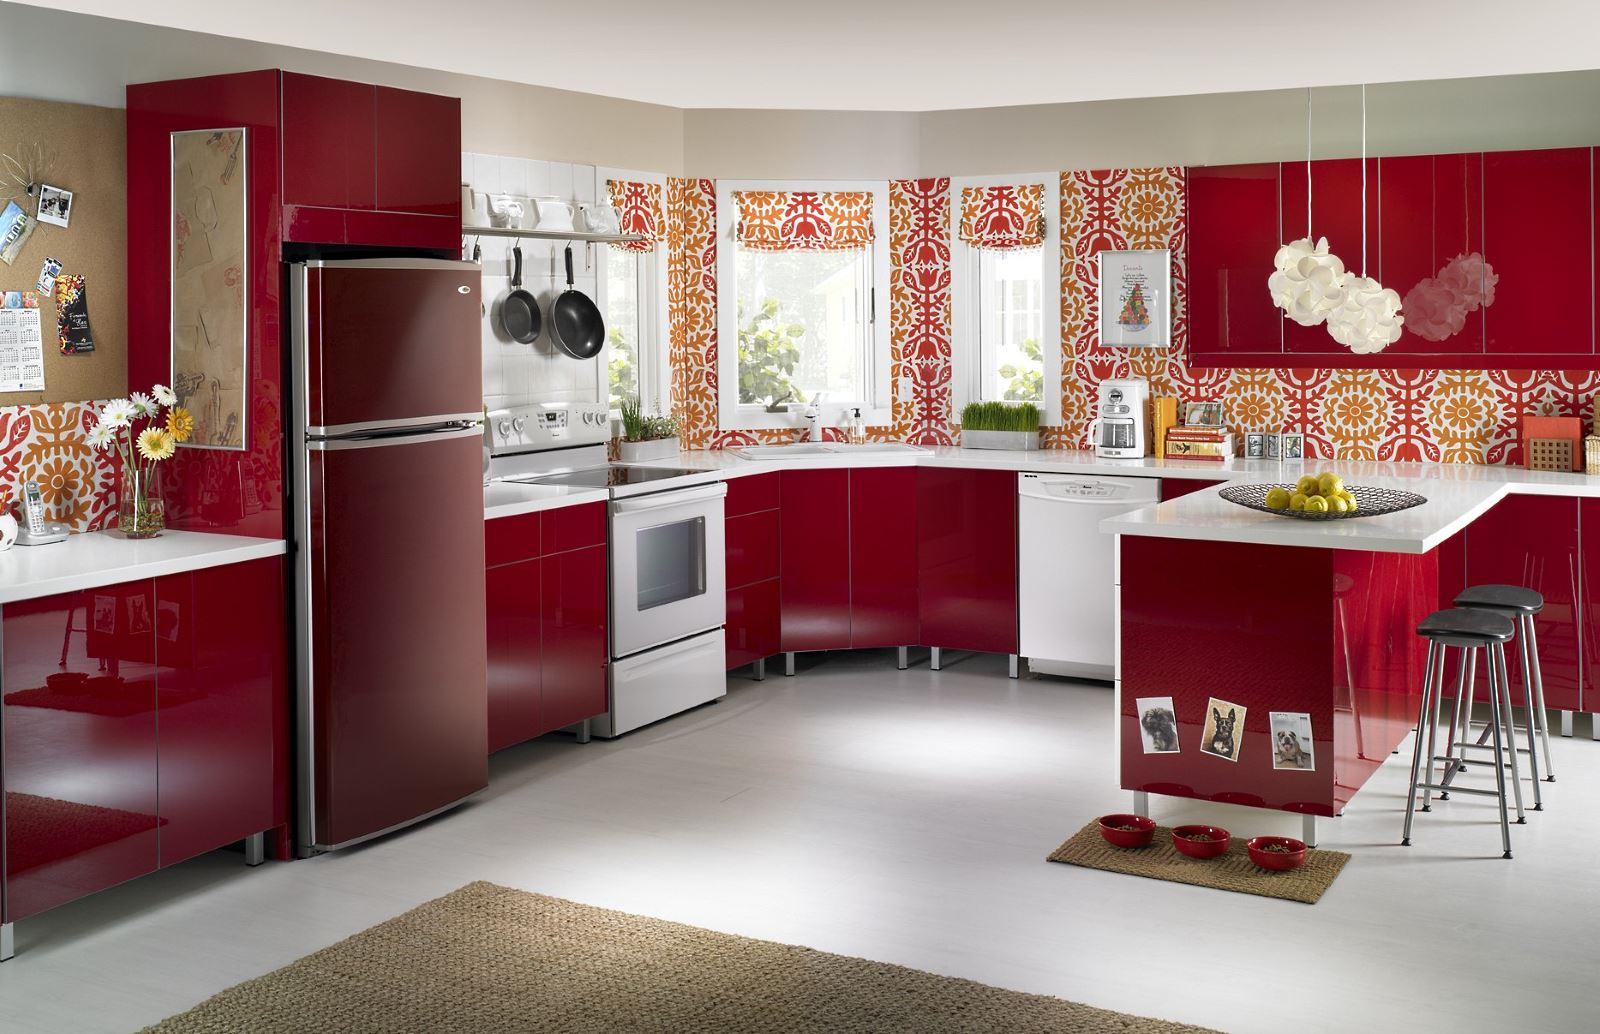 Красная кухня в интерьере (115+ фото): дизайн в ярких контрастах